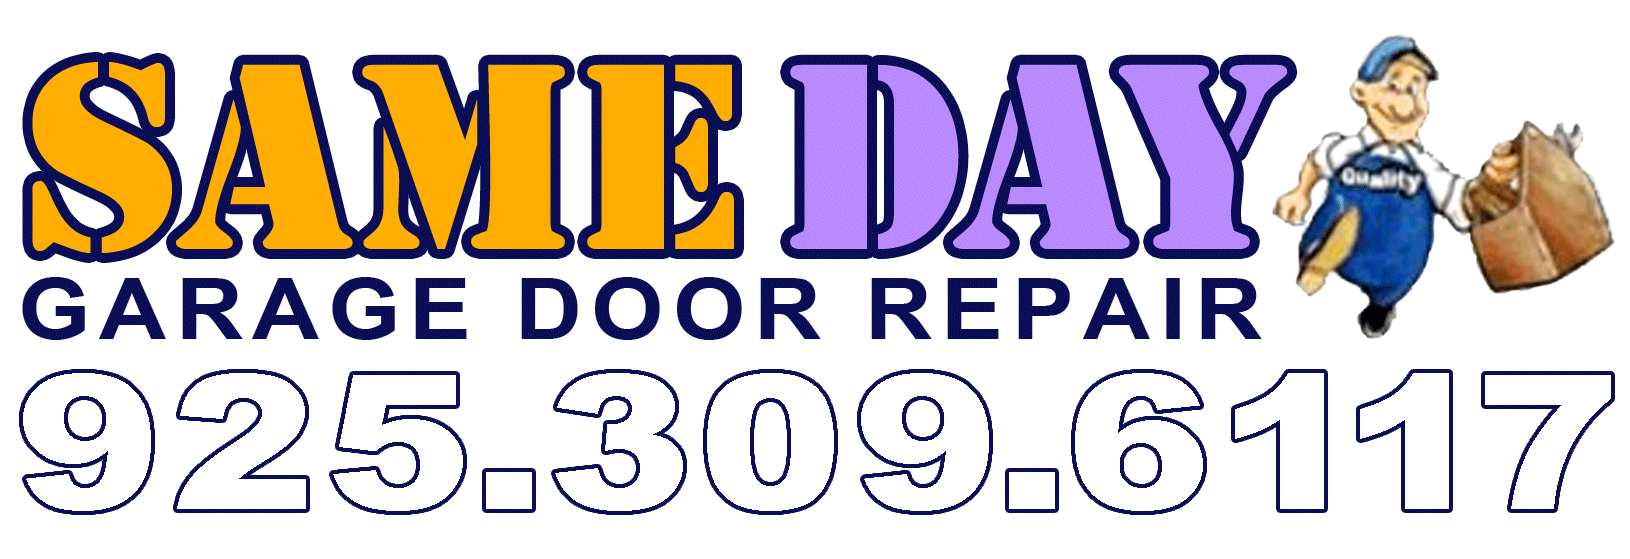 same day garage door repair phone number